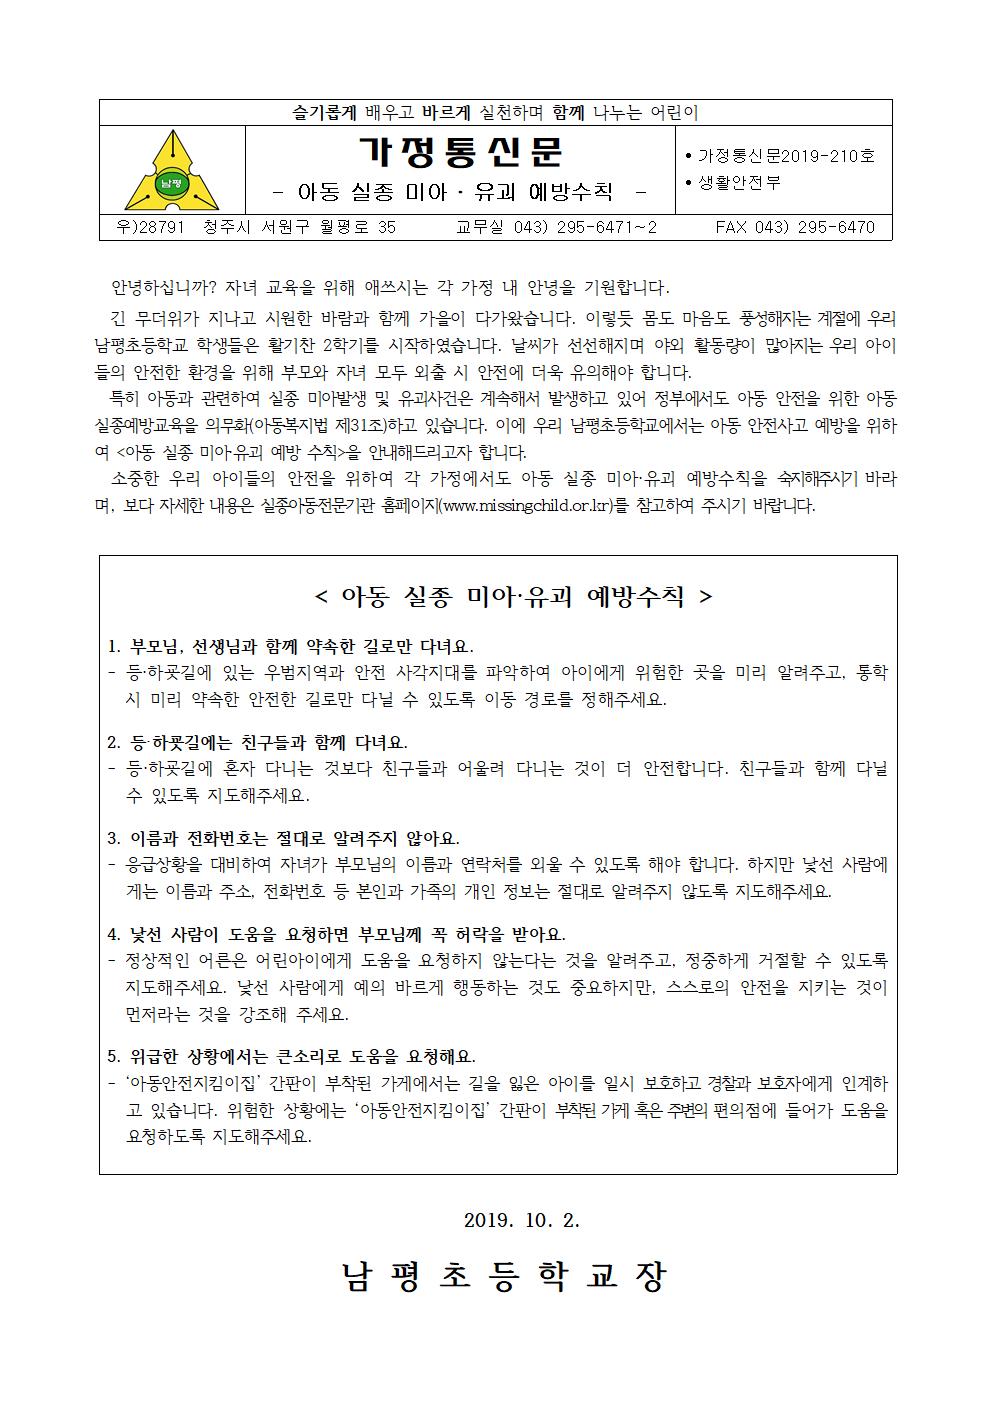 2019-210 아동 실종 미아,유괴 예방 수칙 안내001